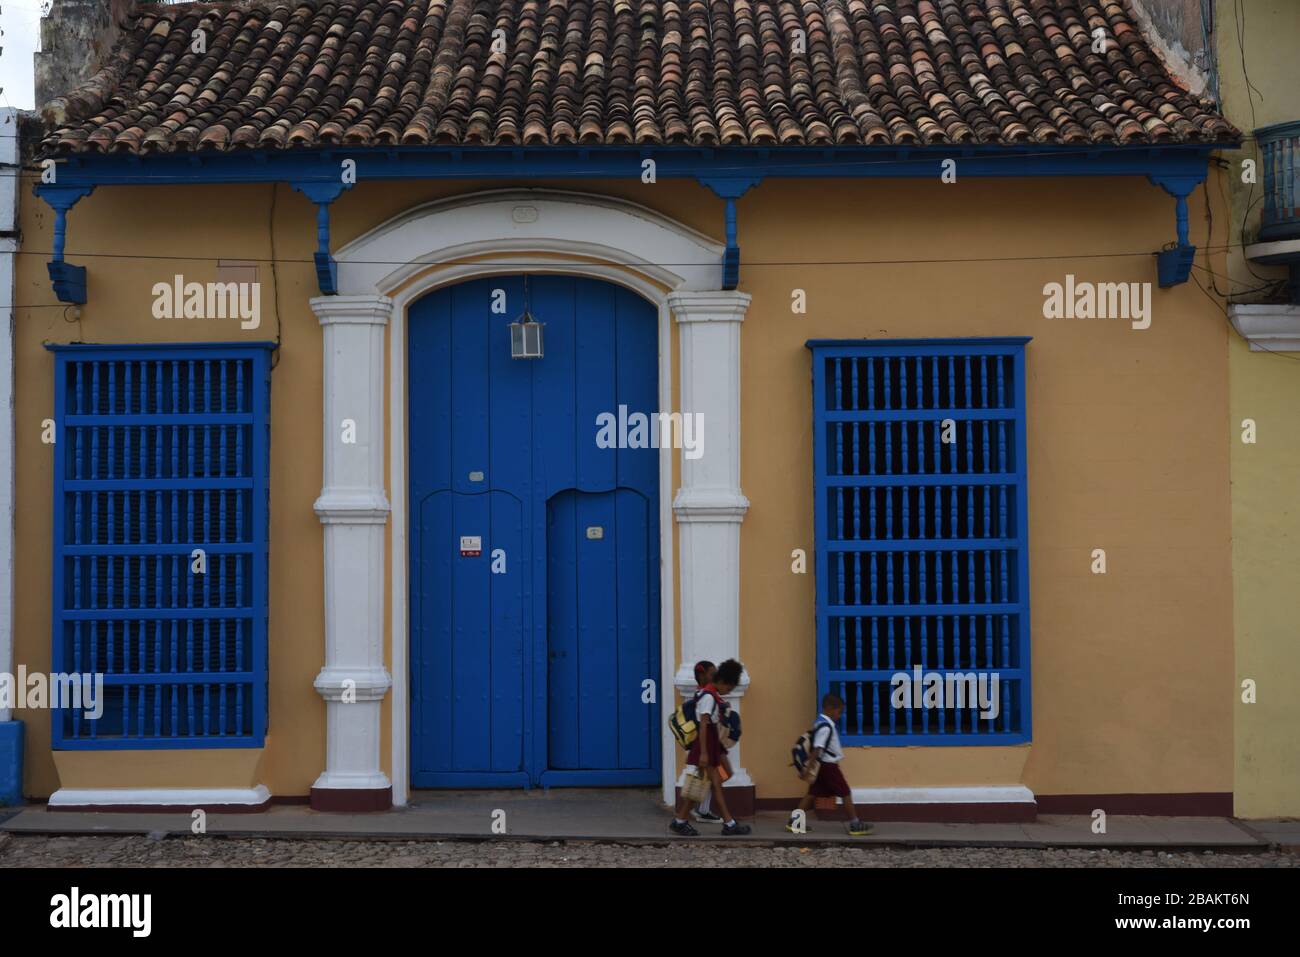 Personas, niños; casa, calle, 2014, Cuba Foto de stock